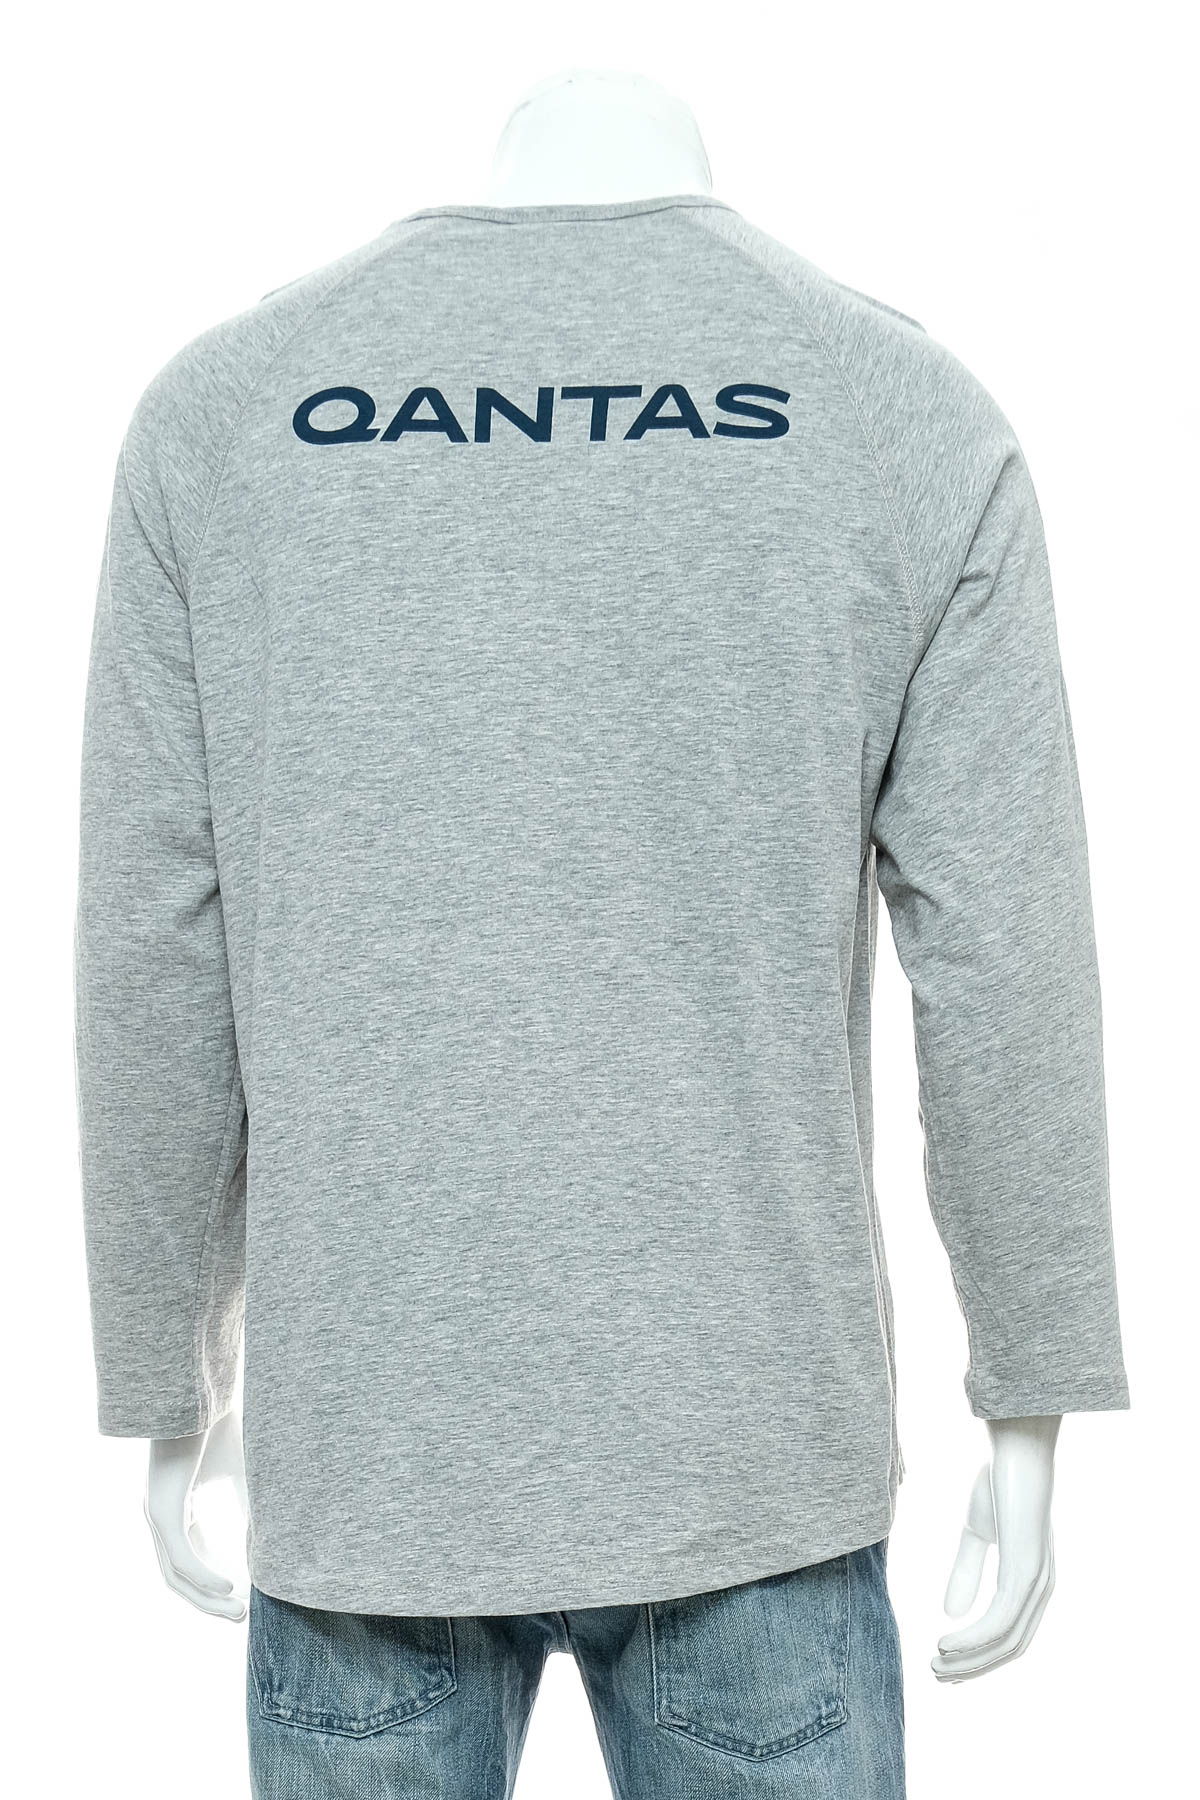 Ανδρική μπλούζα - Qantas - 1